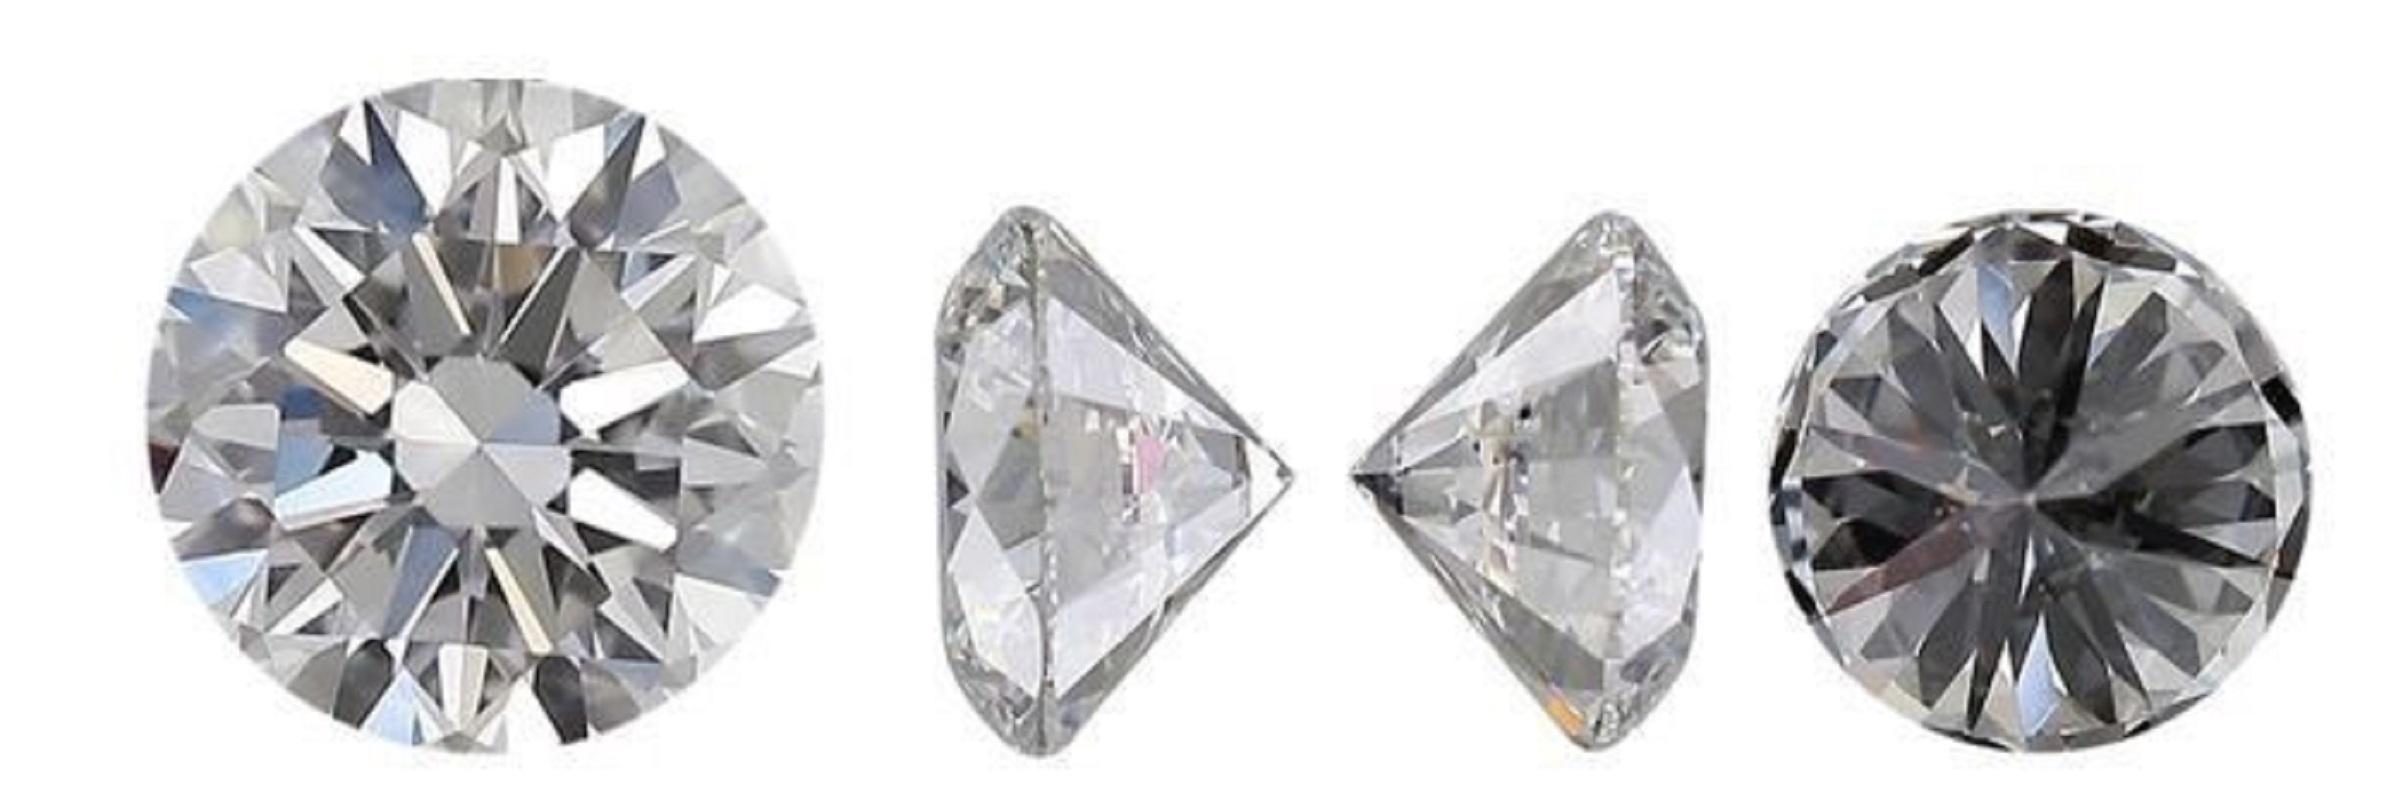 2 pièces Diamants - 1.80 ct - Rond - H - VVS1, Certificat GIA
GIA
Paire de diamants brillants ronds de taille naturelle d'un total de 1.80 carat H VVS1 excellente taille idéale avec des mesurages d'un carat 6.35 mm .
Ces diamants sont accompagnés de